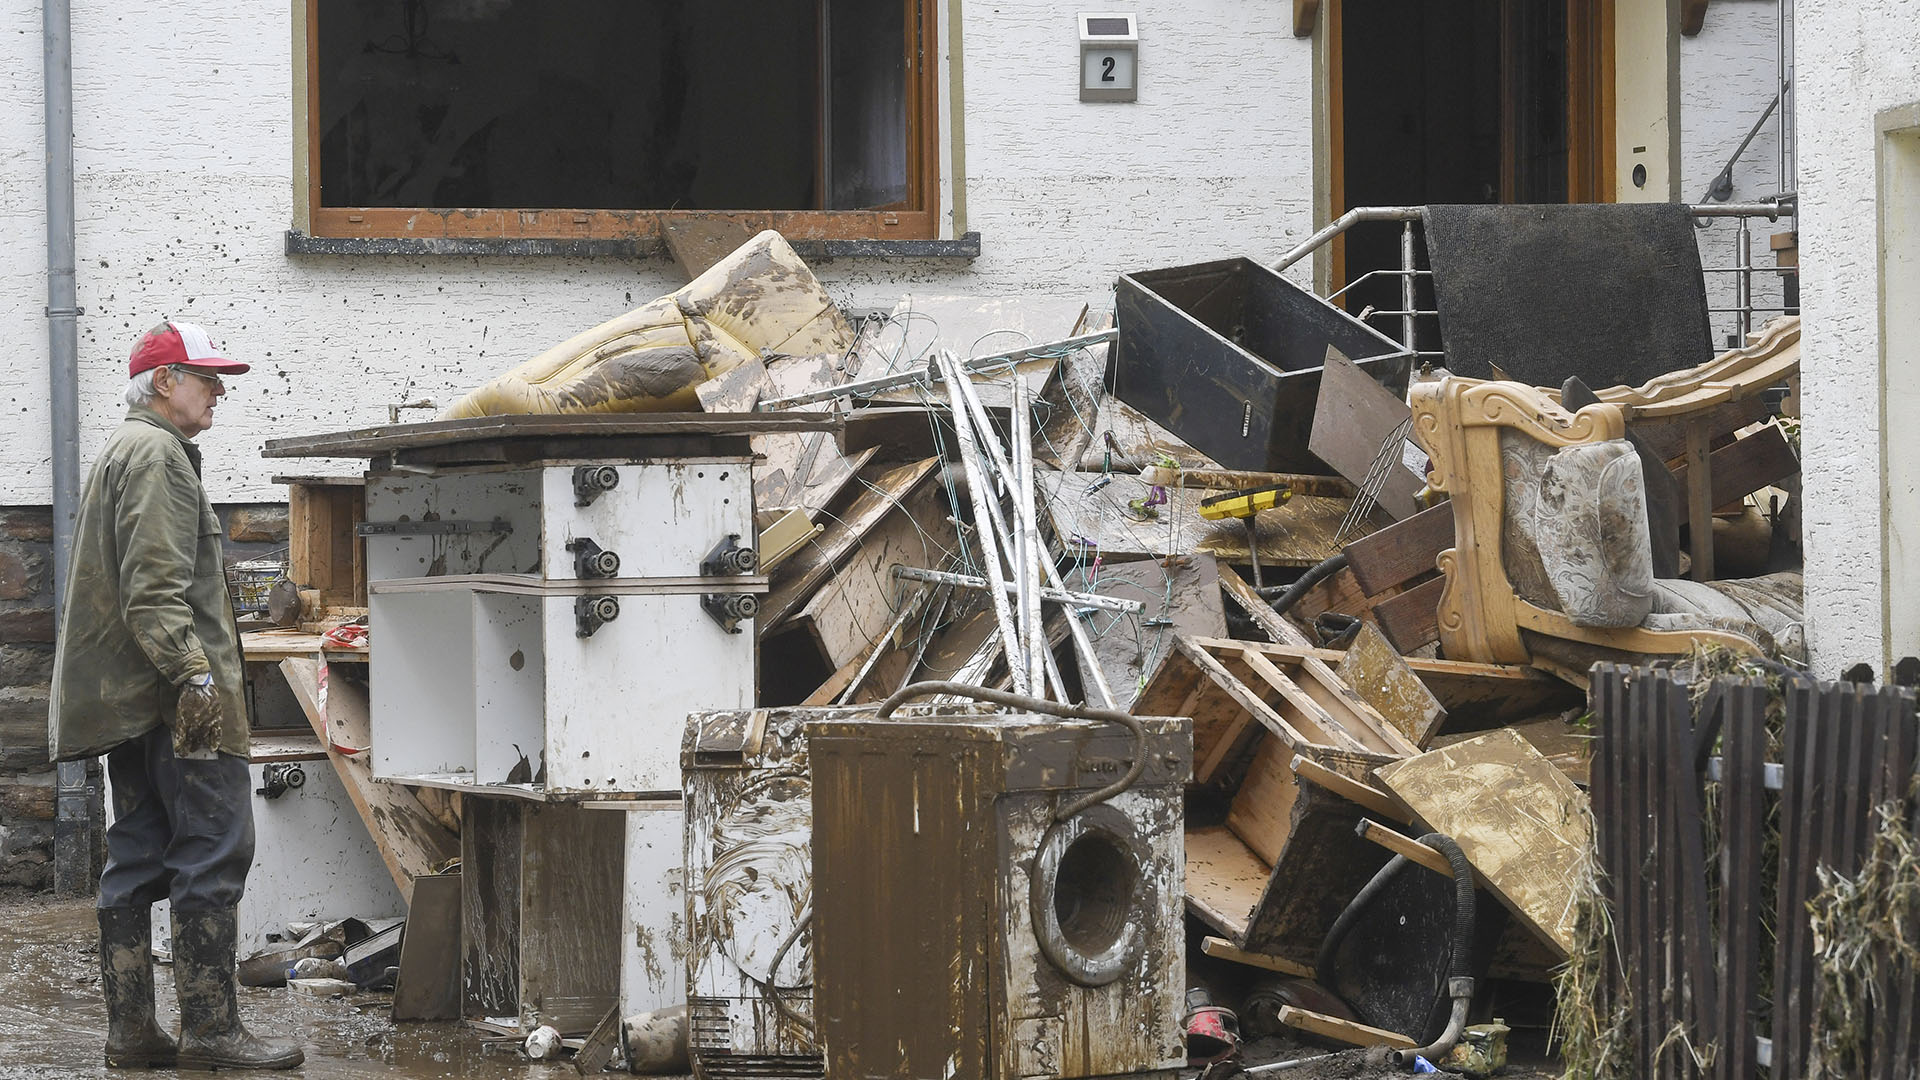 Un residente observa las pertenencias destruidas y embarradas que sacó de una casa después de que las inundaciones causaron daños importantes en Schuld, cerca de Bad Neuenahr-Ahrweiler, Alemania